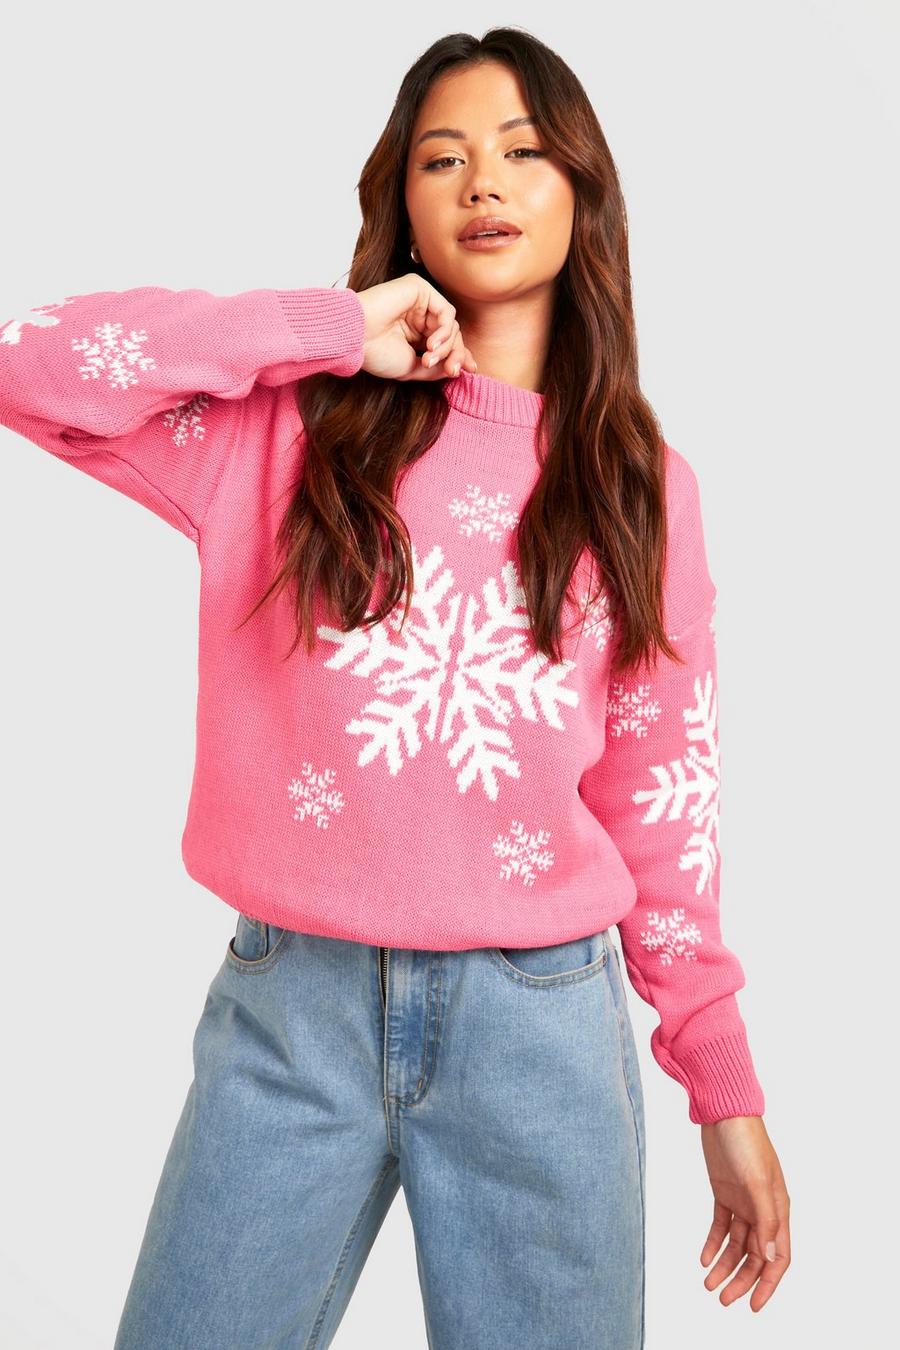 Petite Weihnachtspullover mit Schneeflocken, Pink rosa